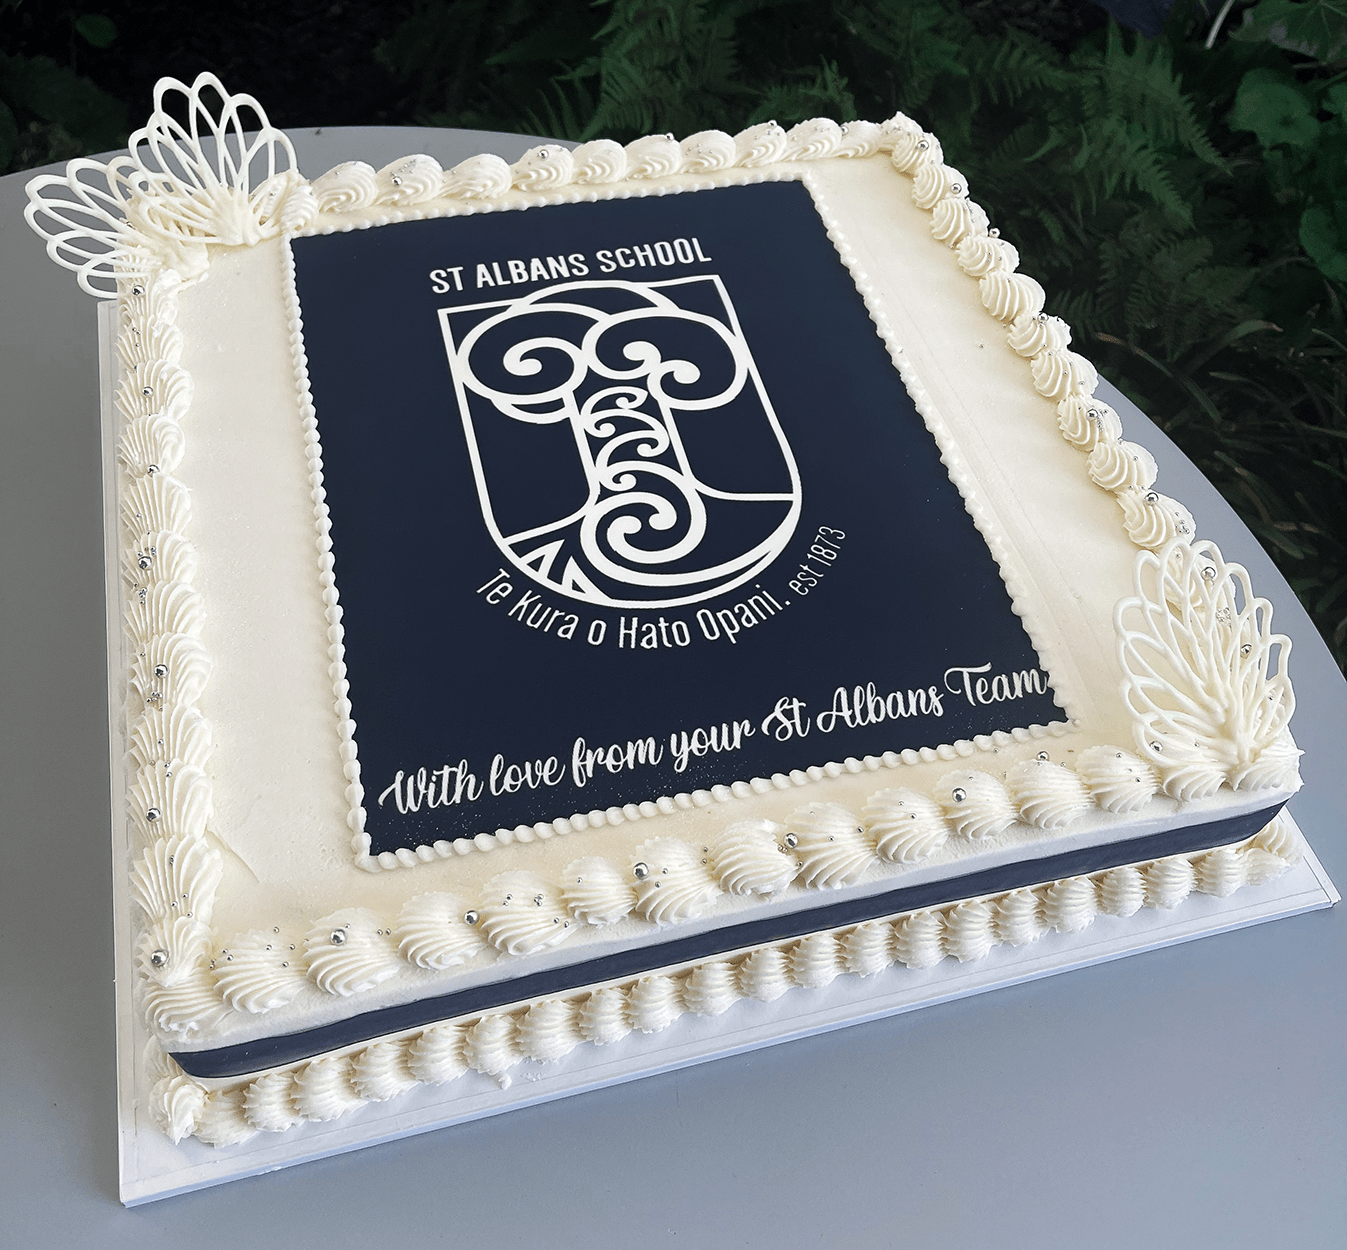 Introducing the Bento Cake Trend | Cake Craft CompanyCake Craft Company |  Blog